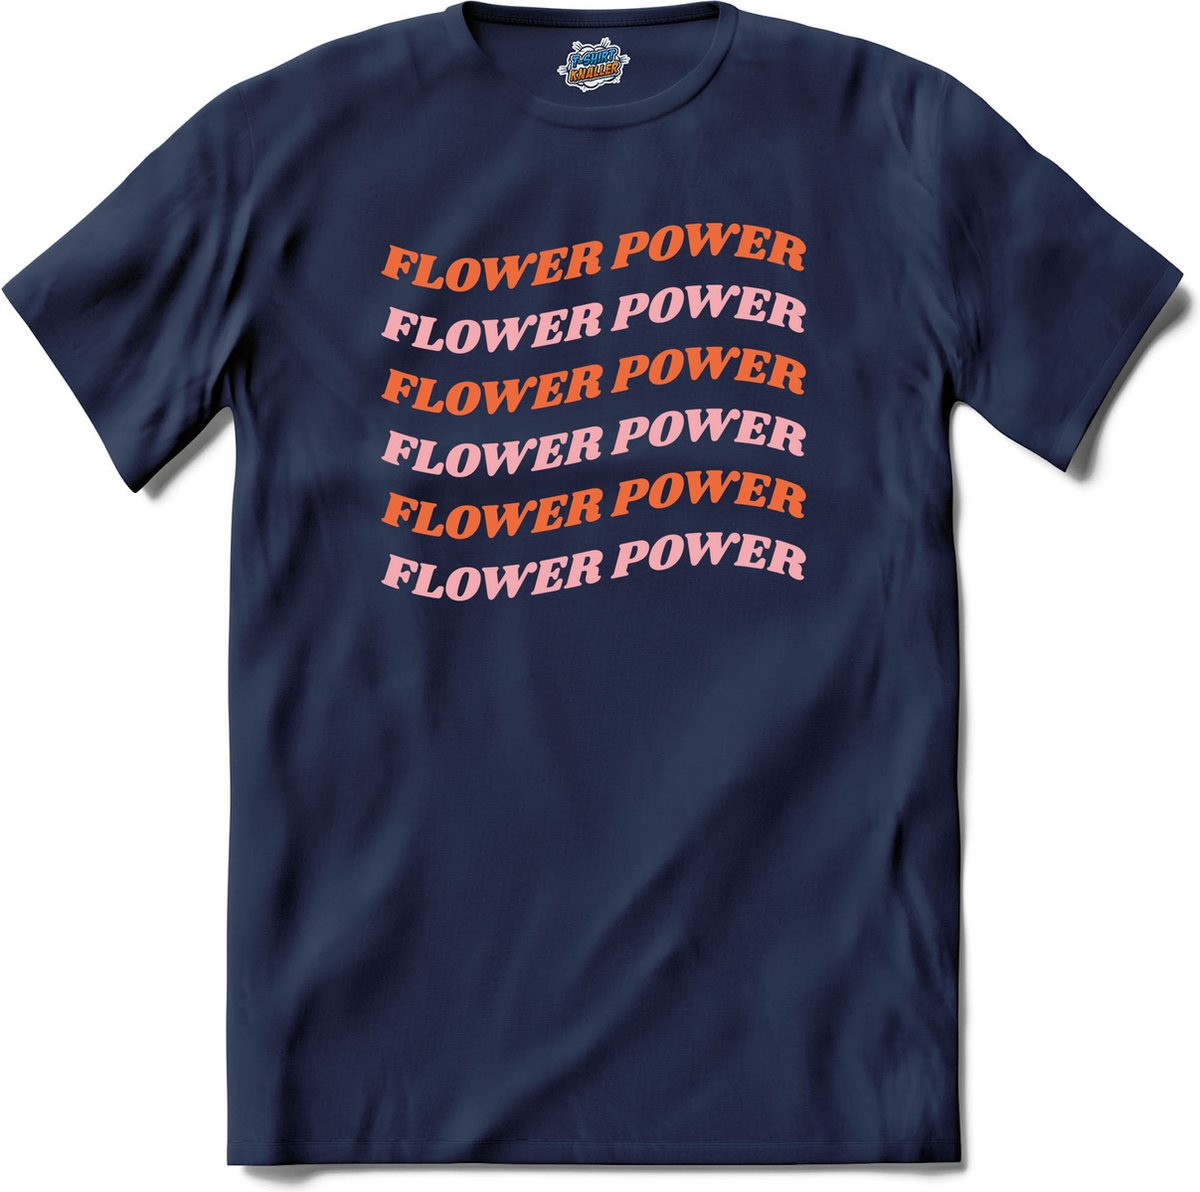 Flower power - T-Shirt - Jongens - Navy Blue - Maat 2 jaar